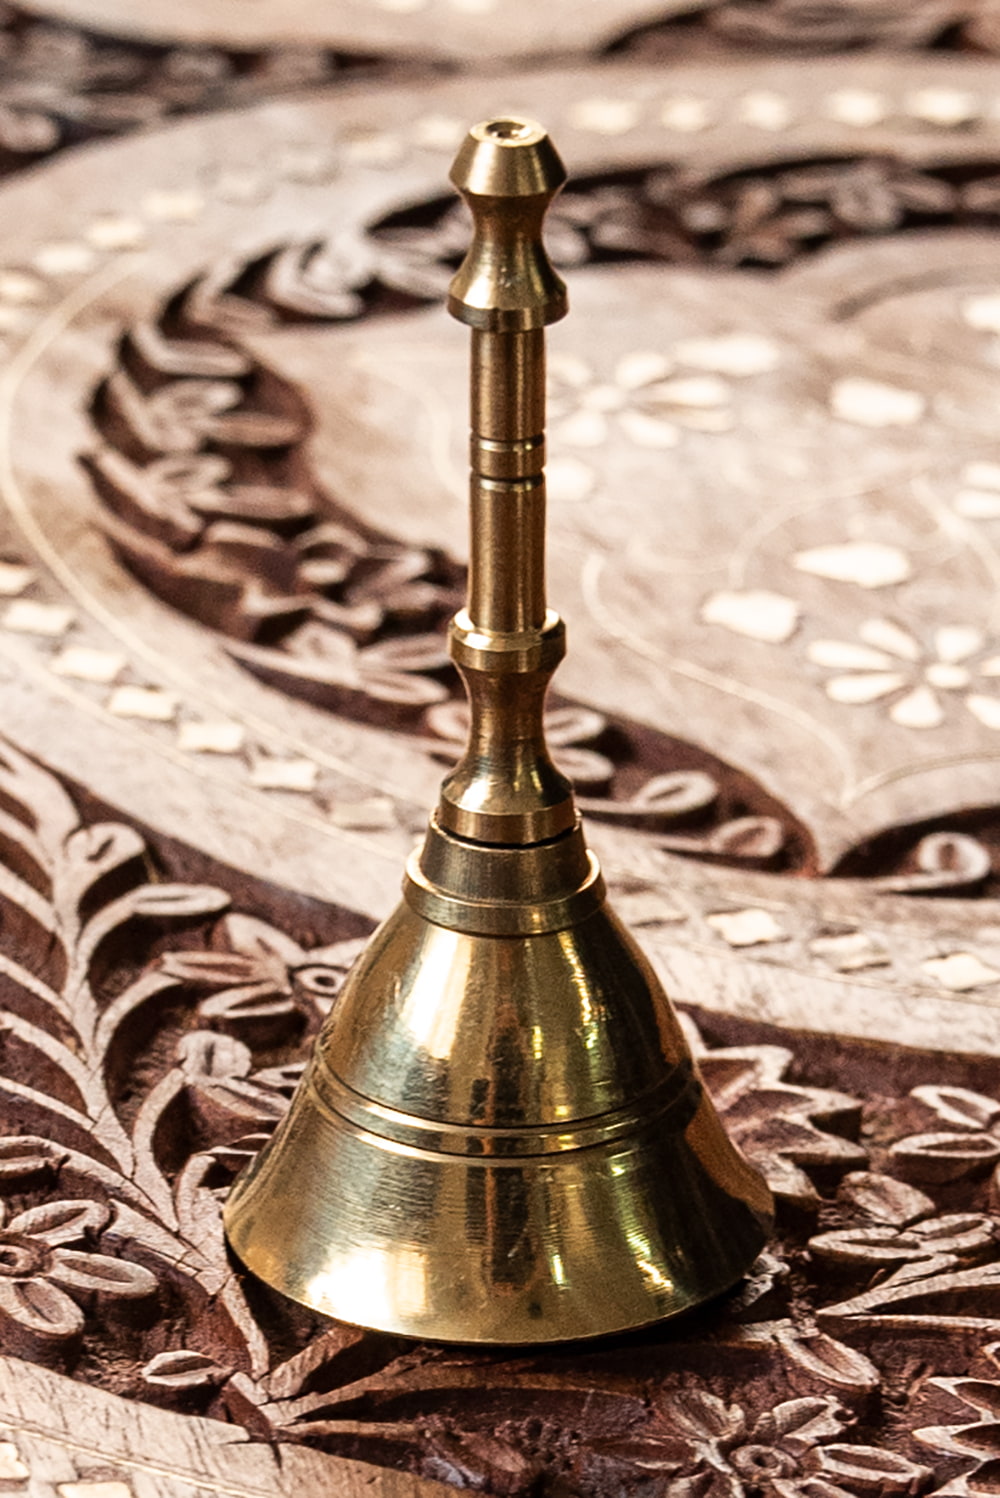 ハンドベル インド 打楽器 民族楽器 ブラス製ハンドベル(7.5cm) 呼び鈴 インド楽器 エスニック楽器 :ID-HNDBL-89:インド・アジア雑貨ティラキタ  通販 